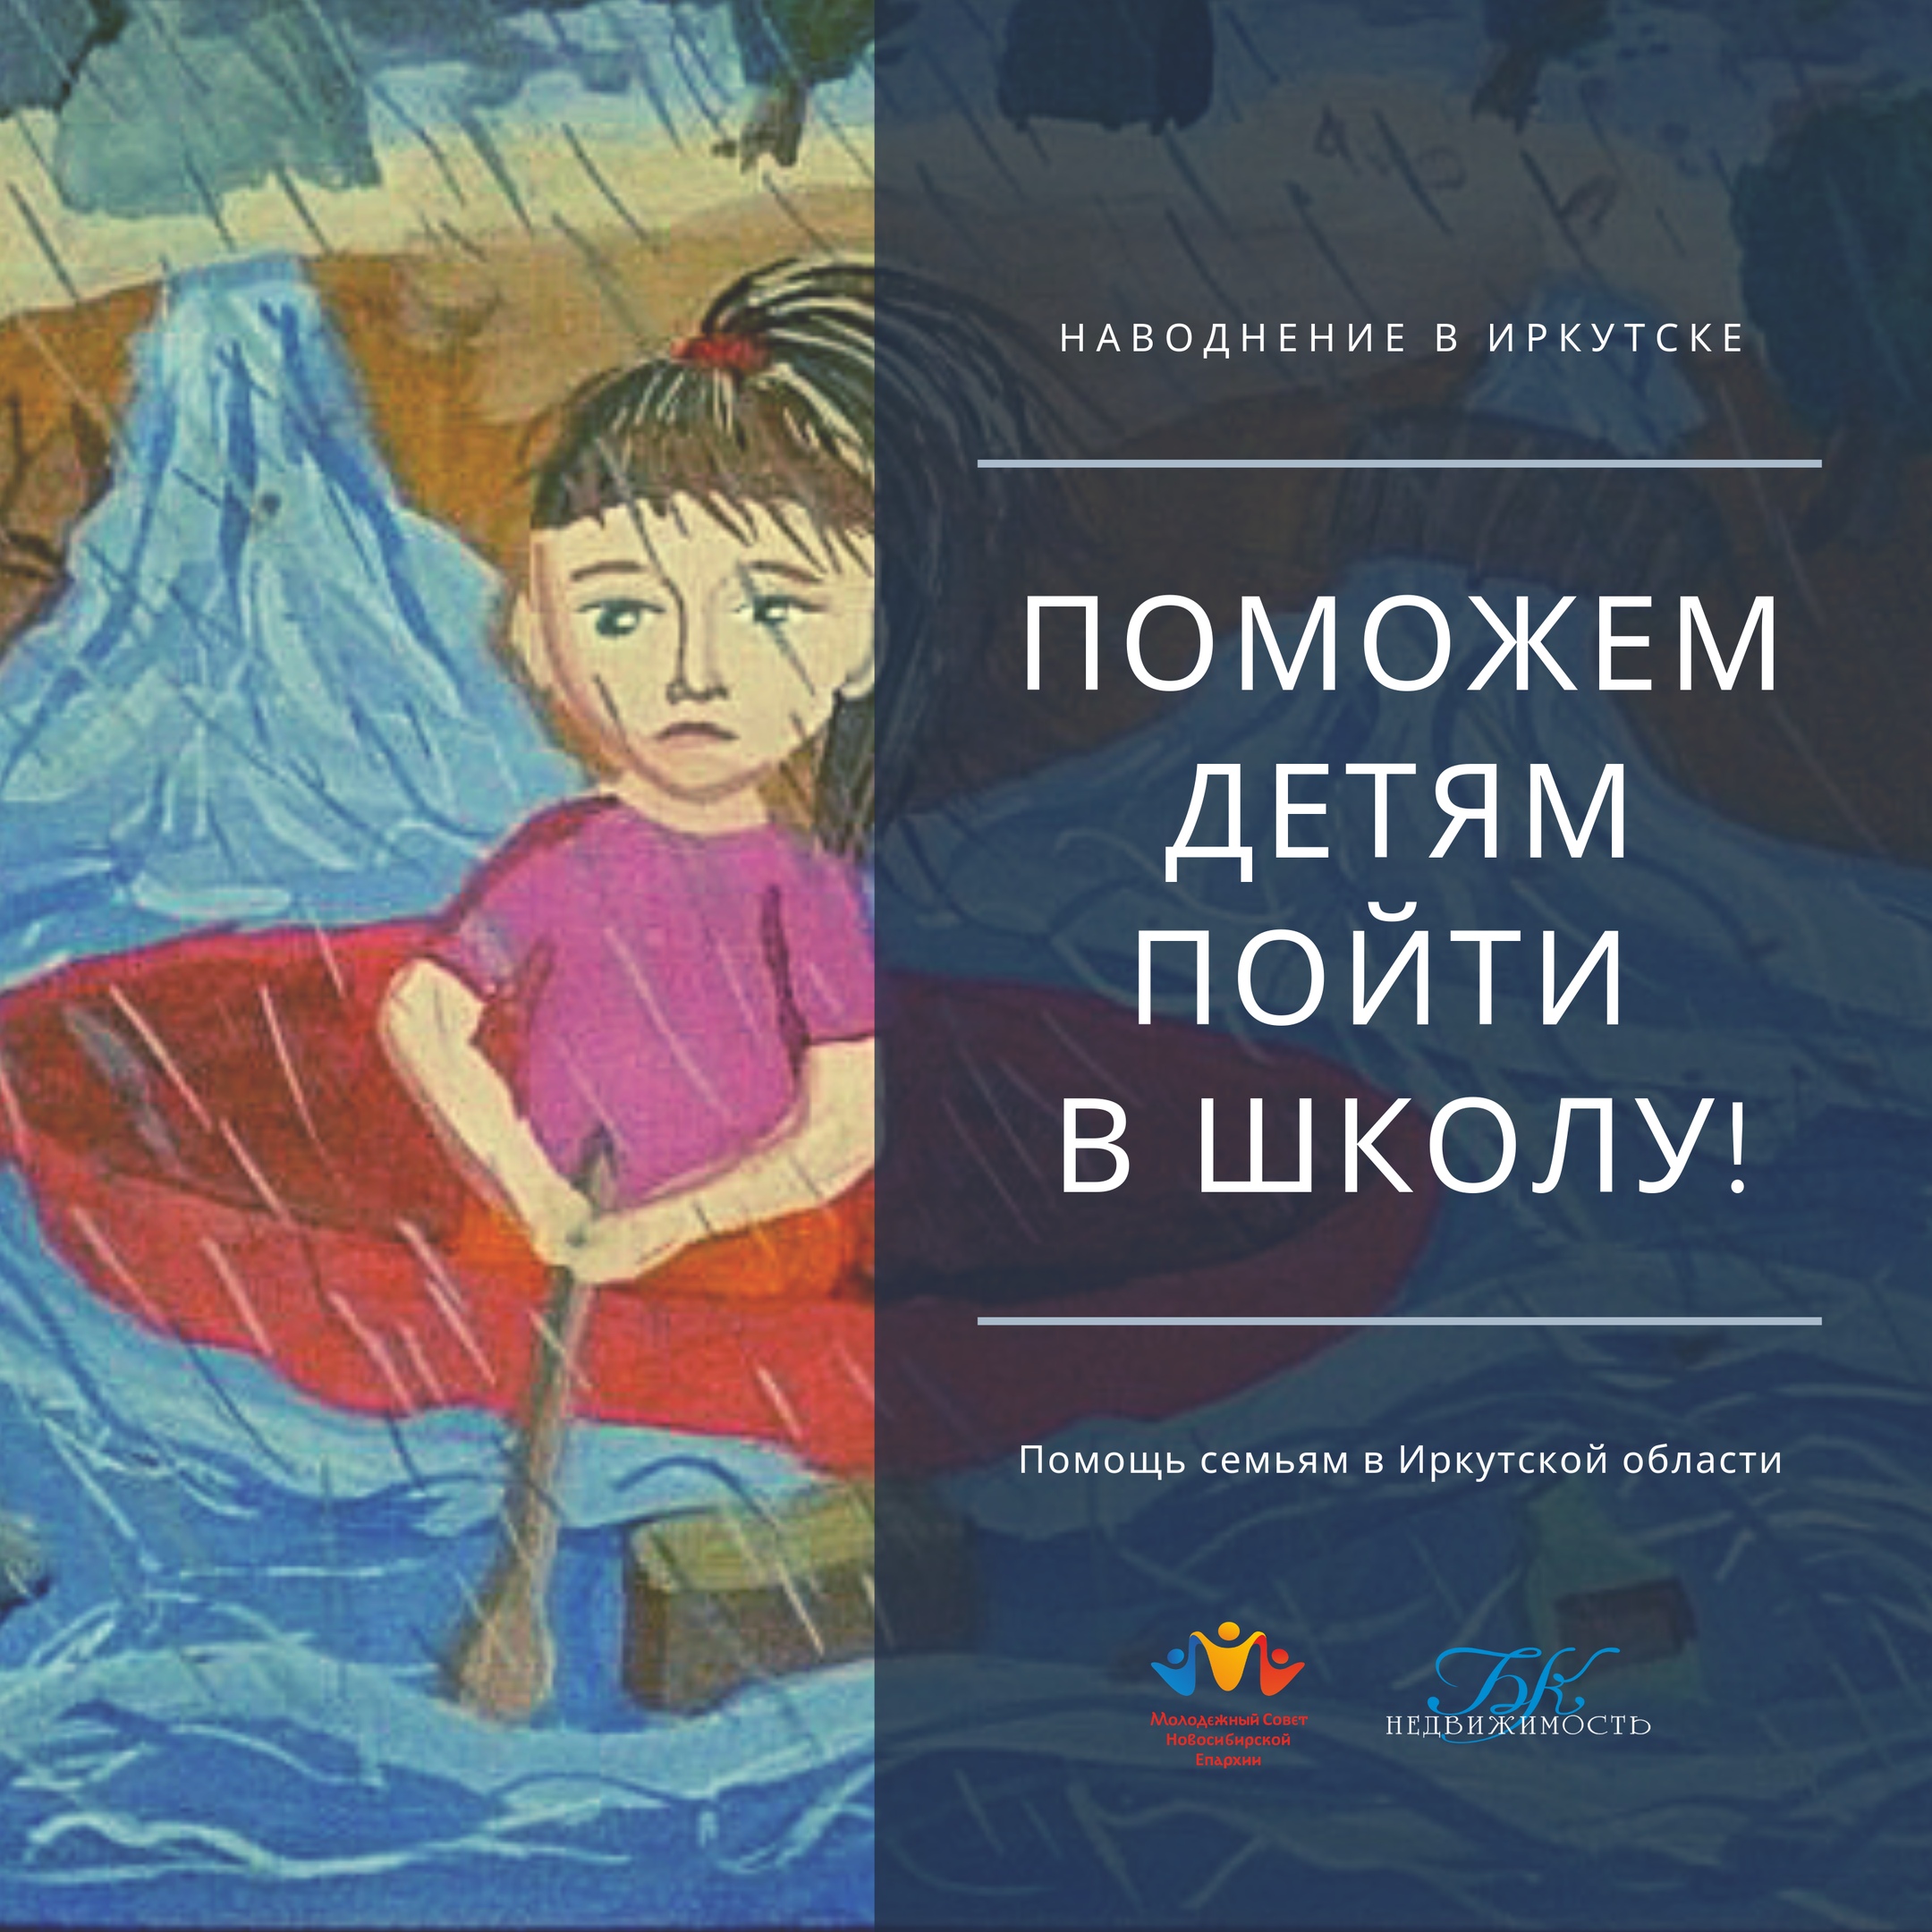 В Новосибирске продолжается акция помощи семьям, пострадавшим от наводнения в Иркутской области